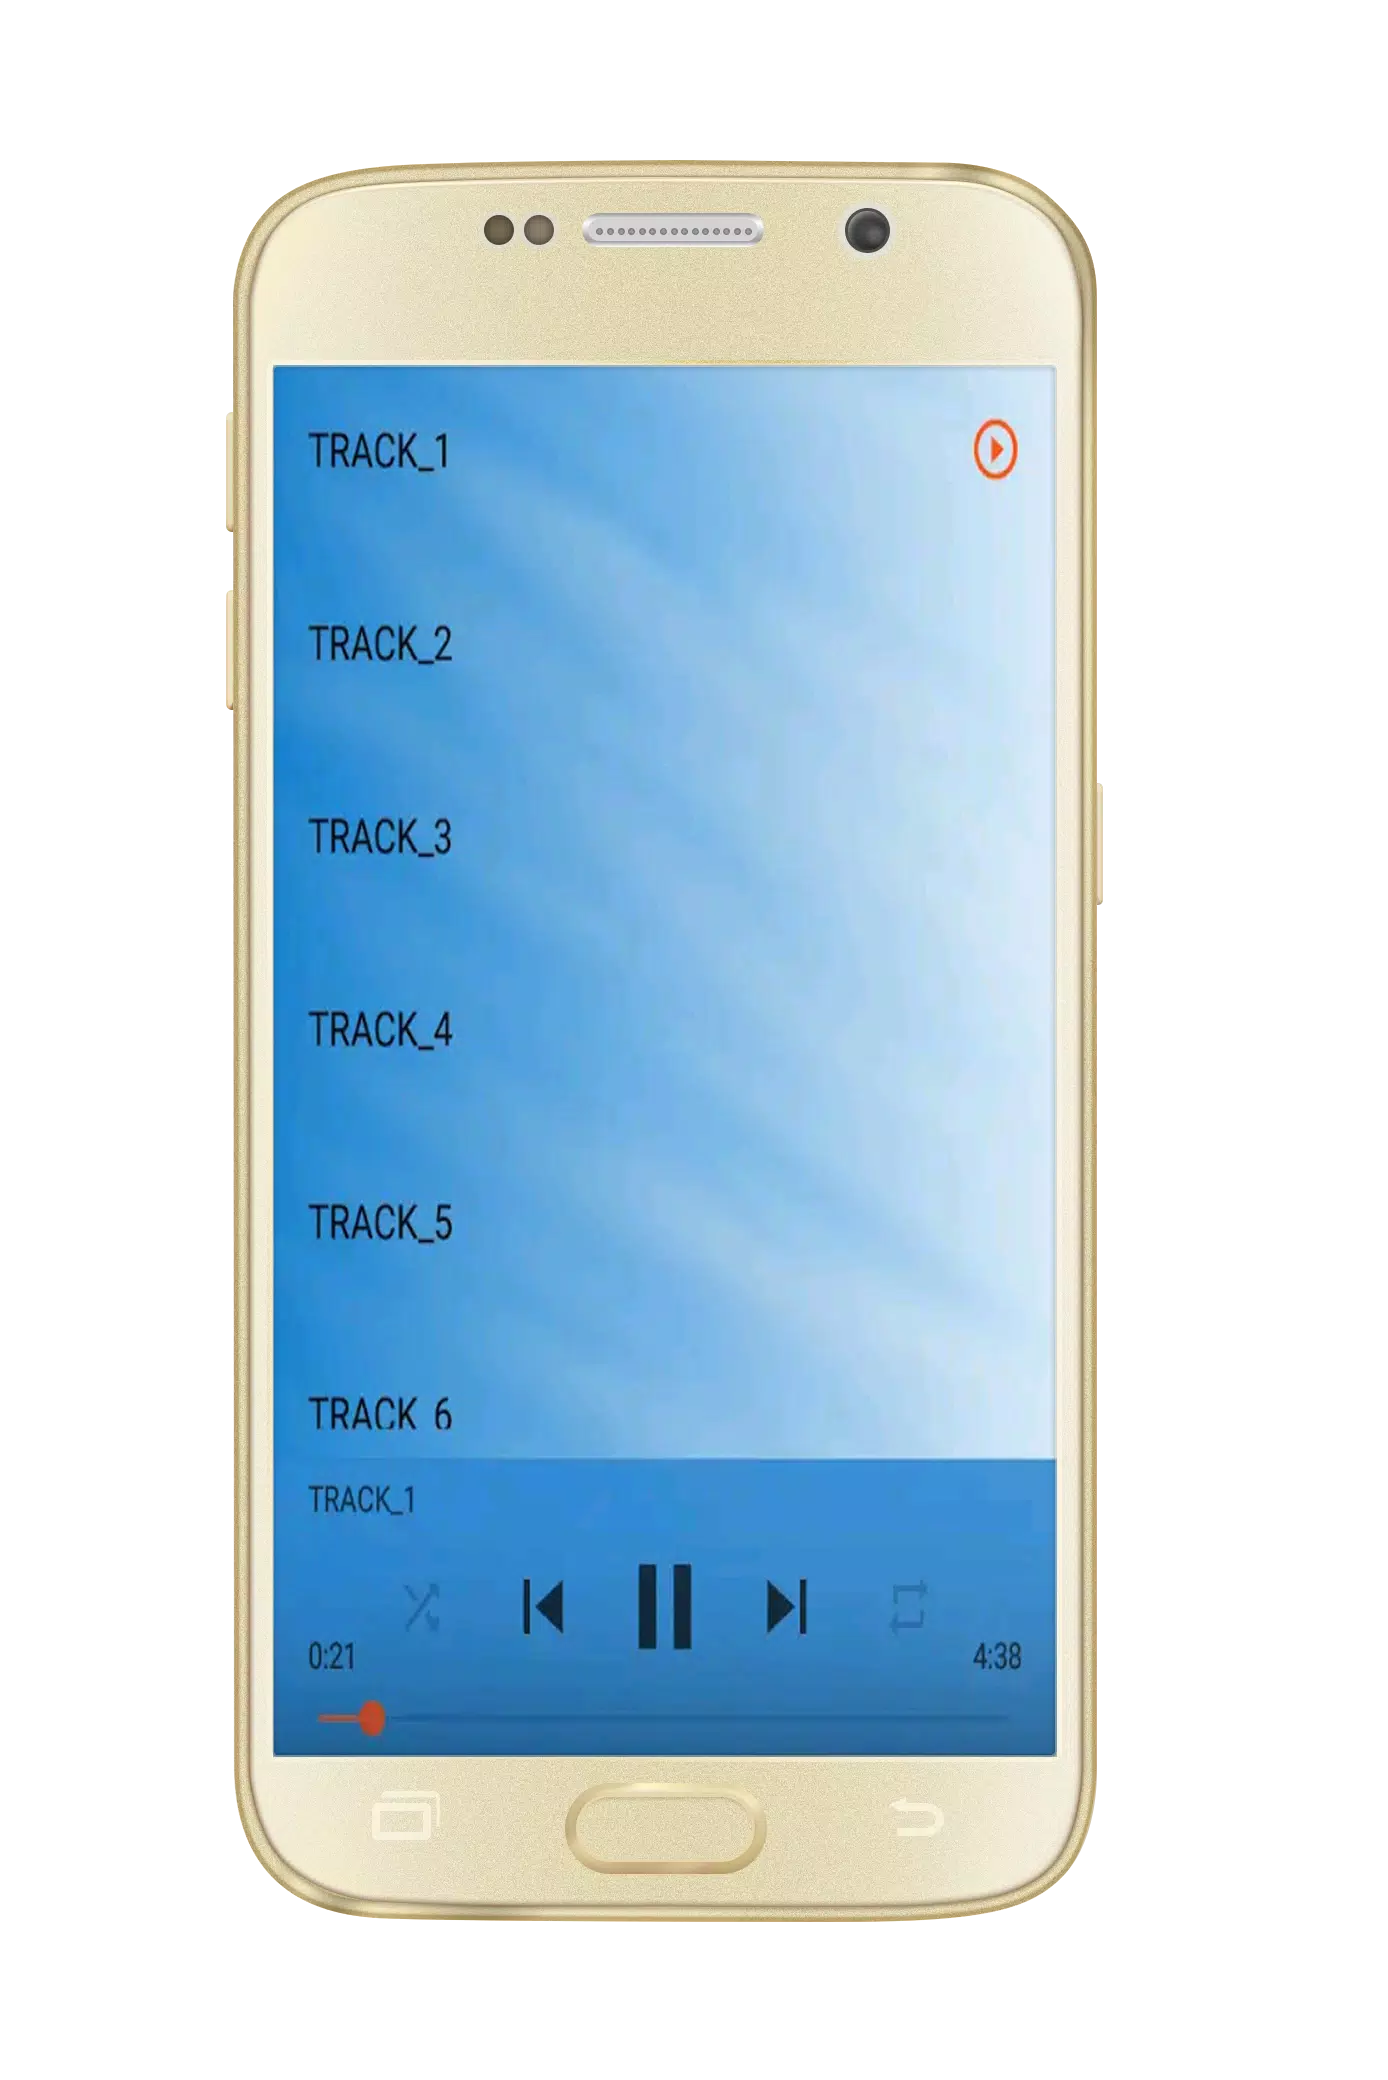 اغاني اودادن mp3 APK for Android Download